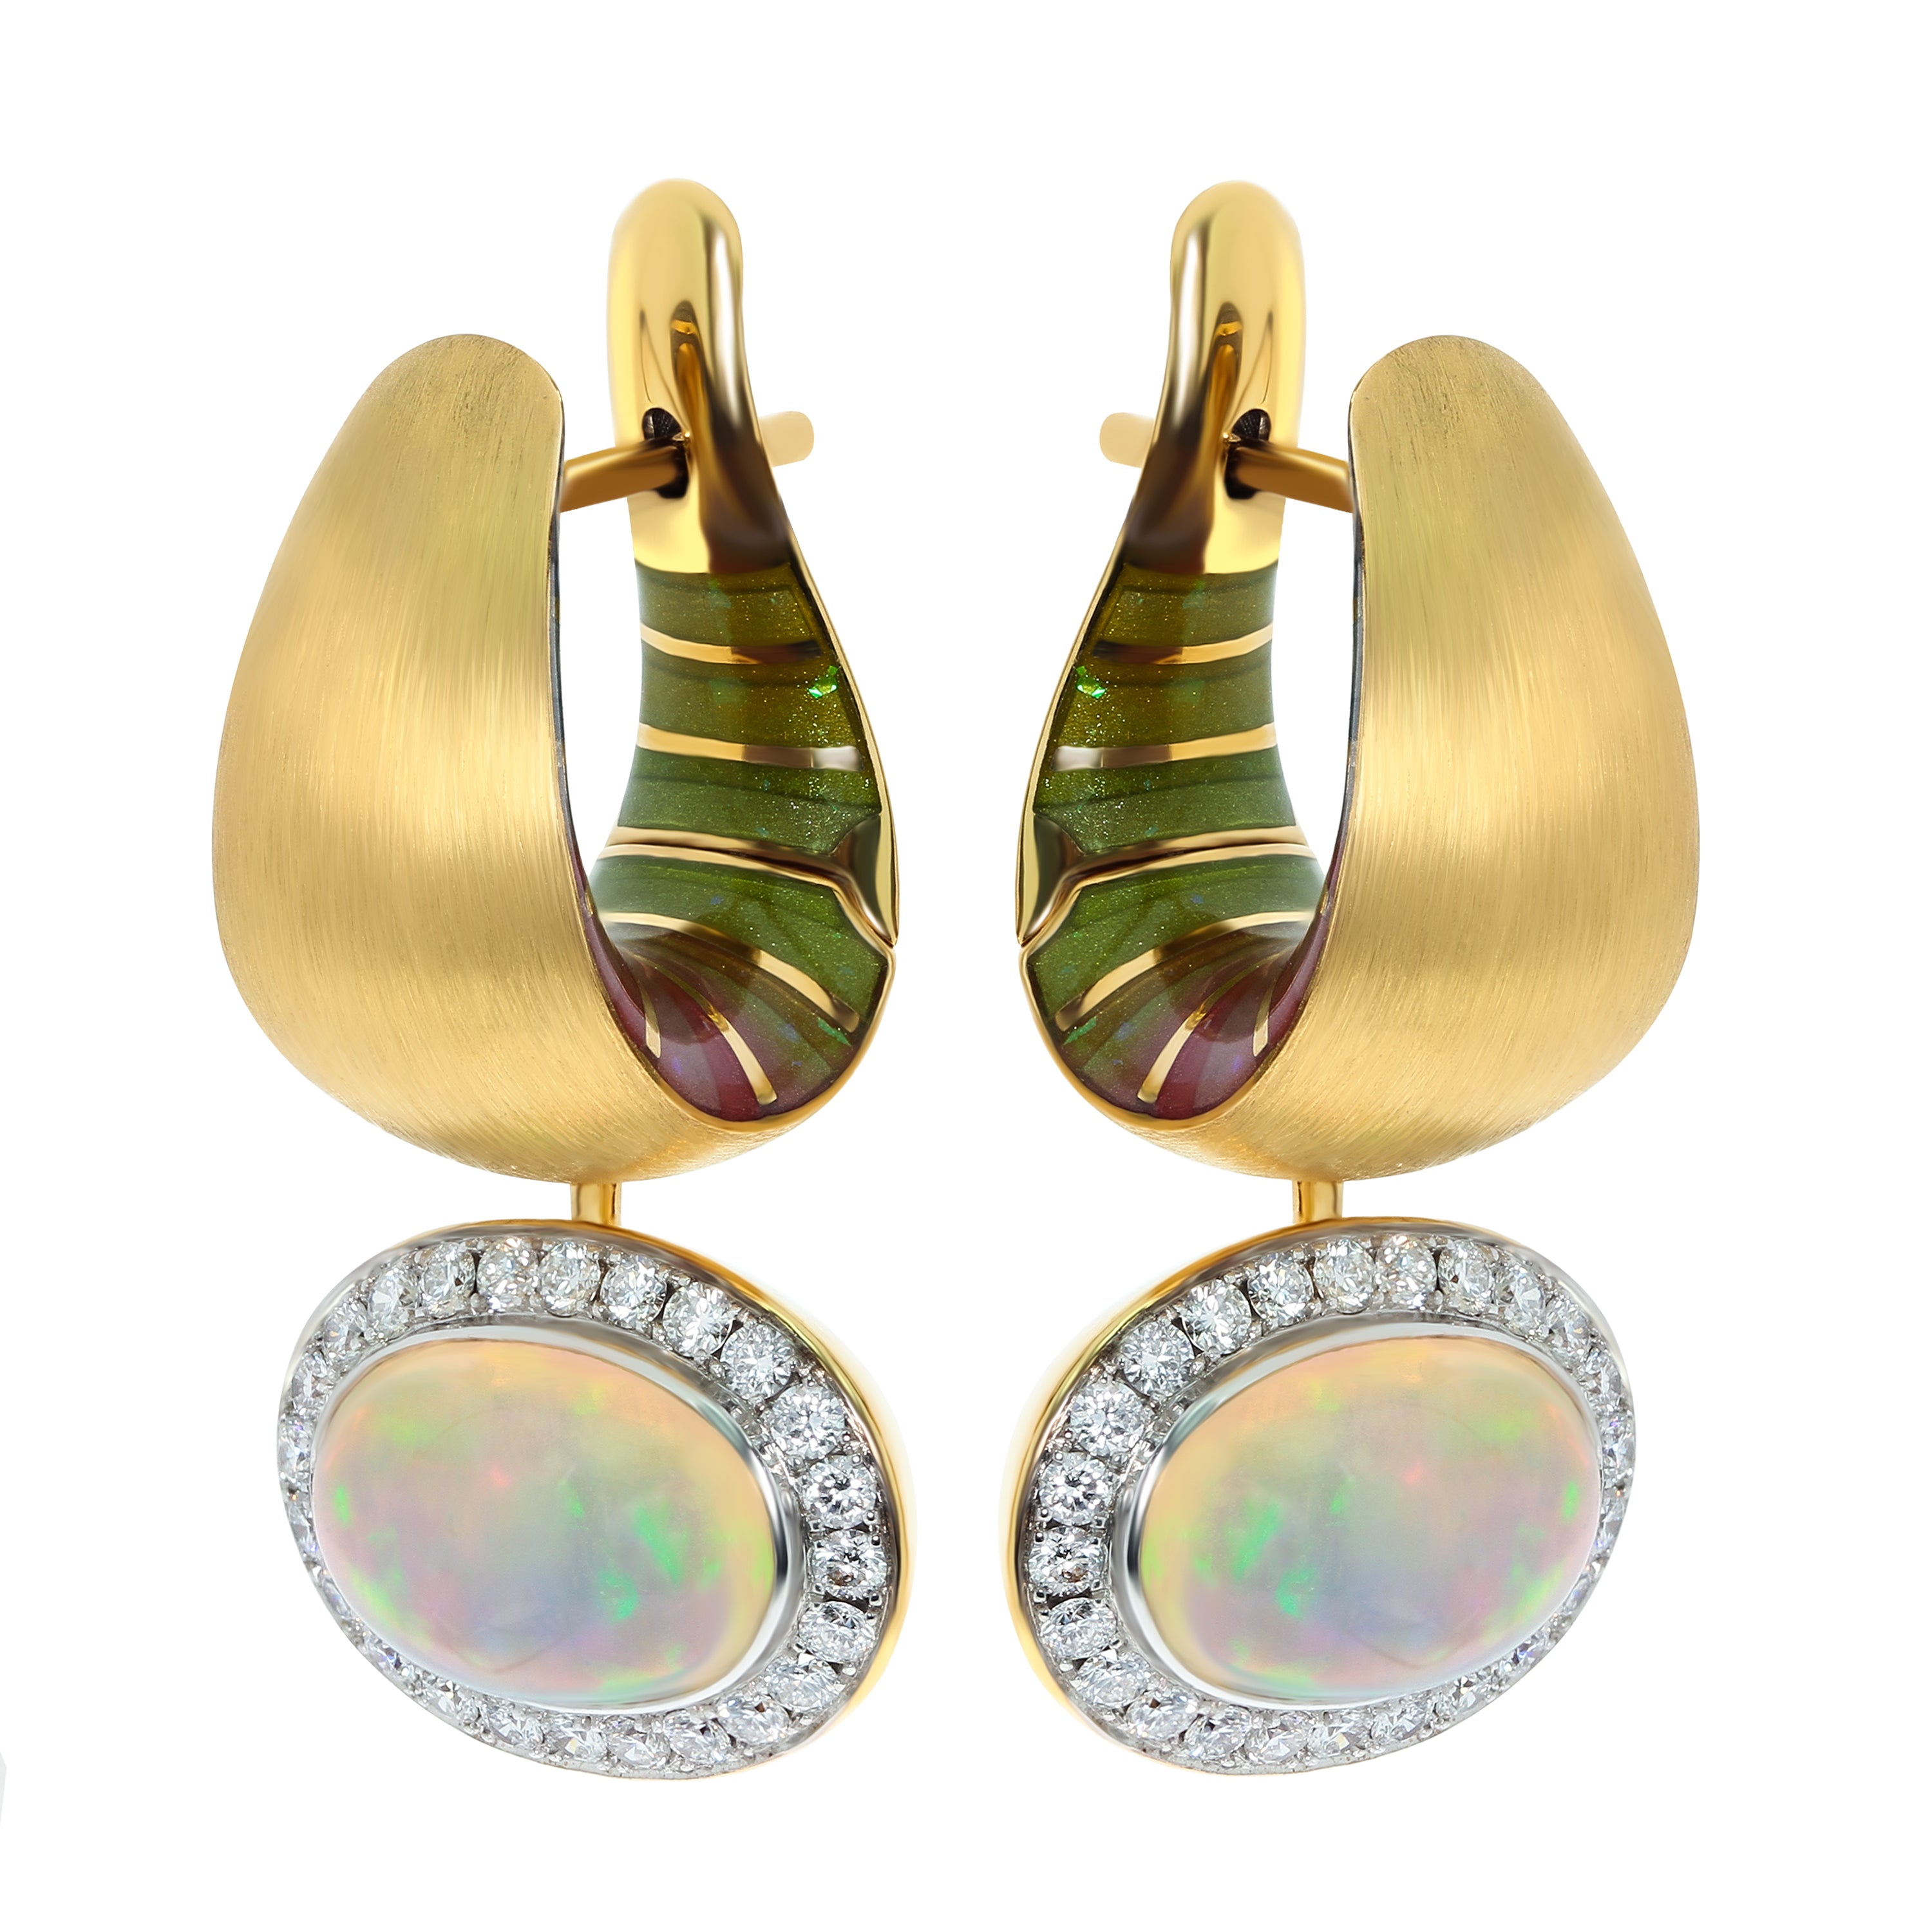 E 0178-61, 18K Yellow Gold, Enamel, Opal, Diamonds Earrings